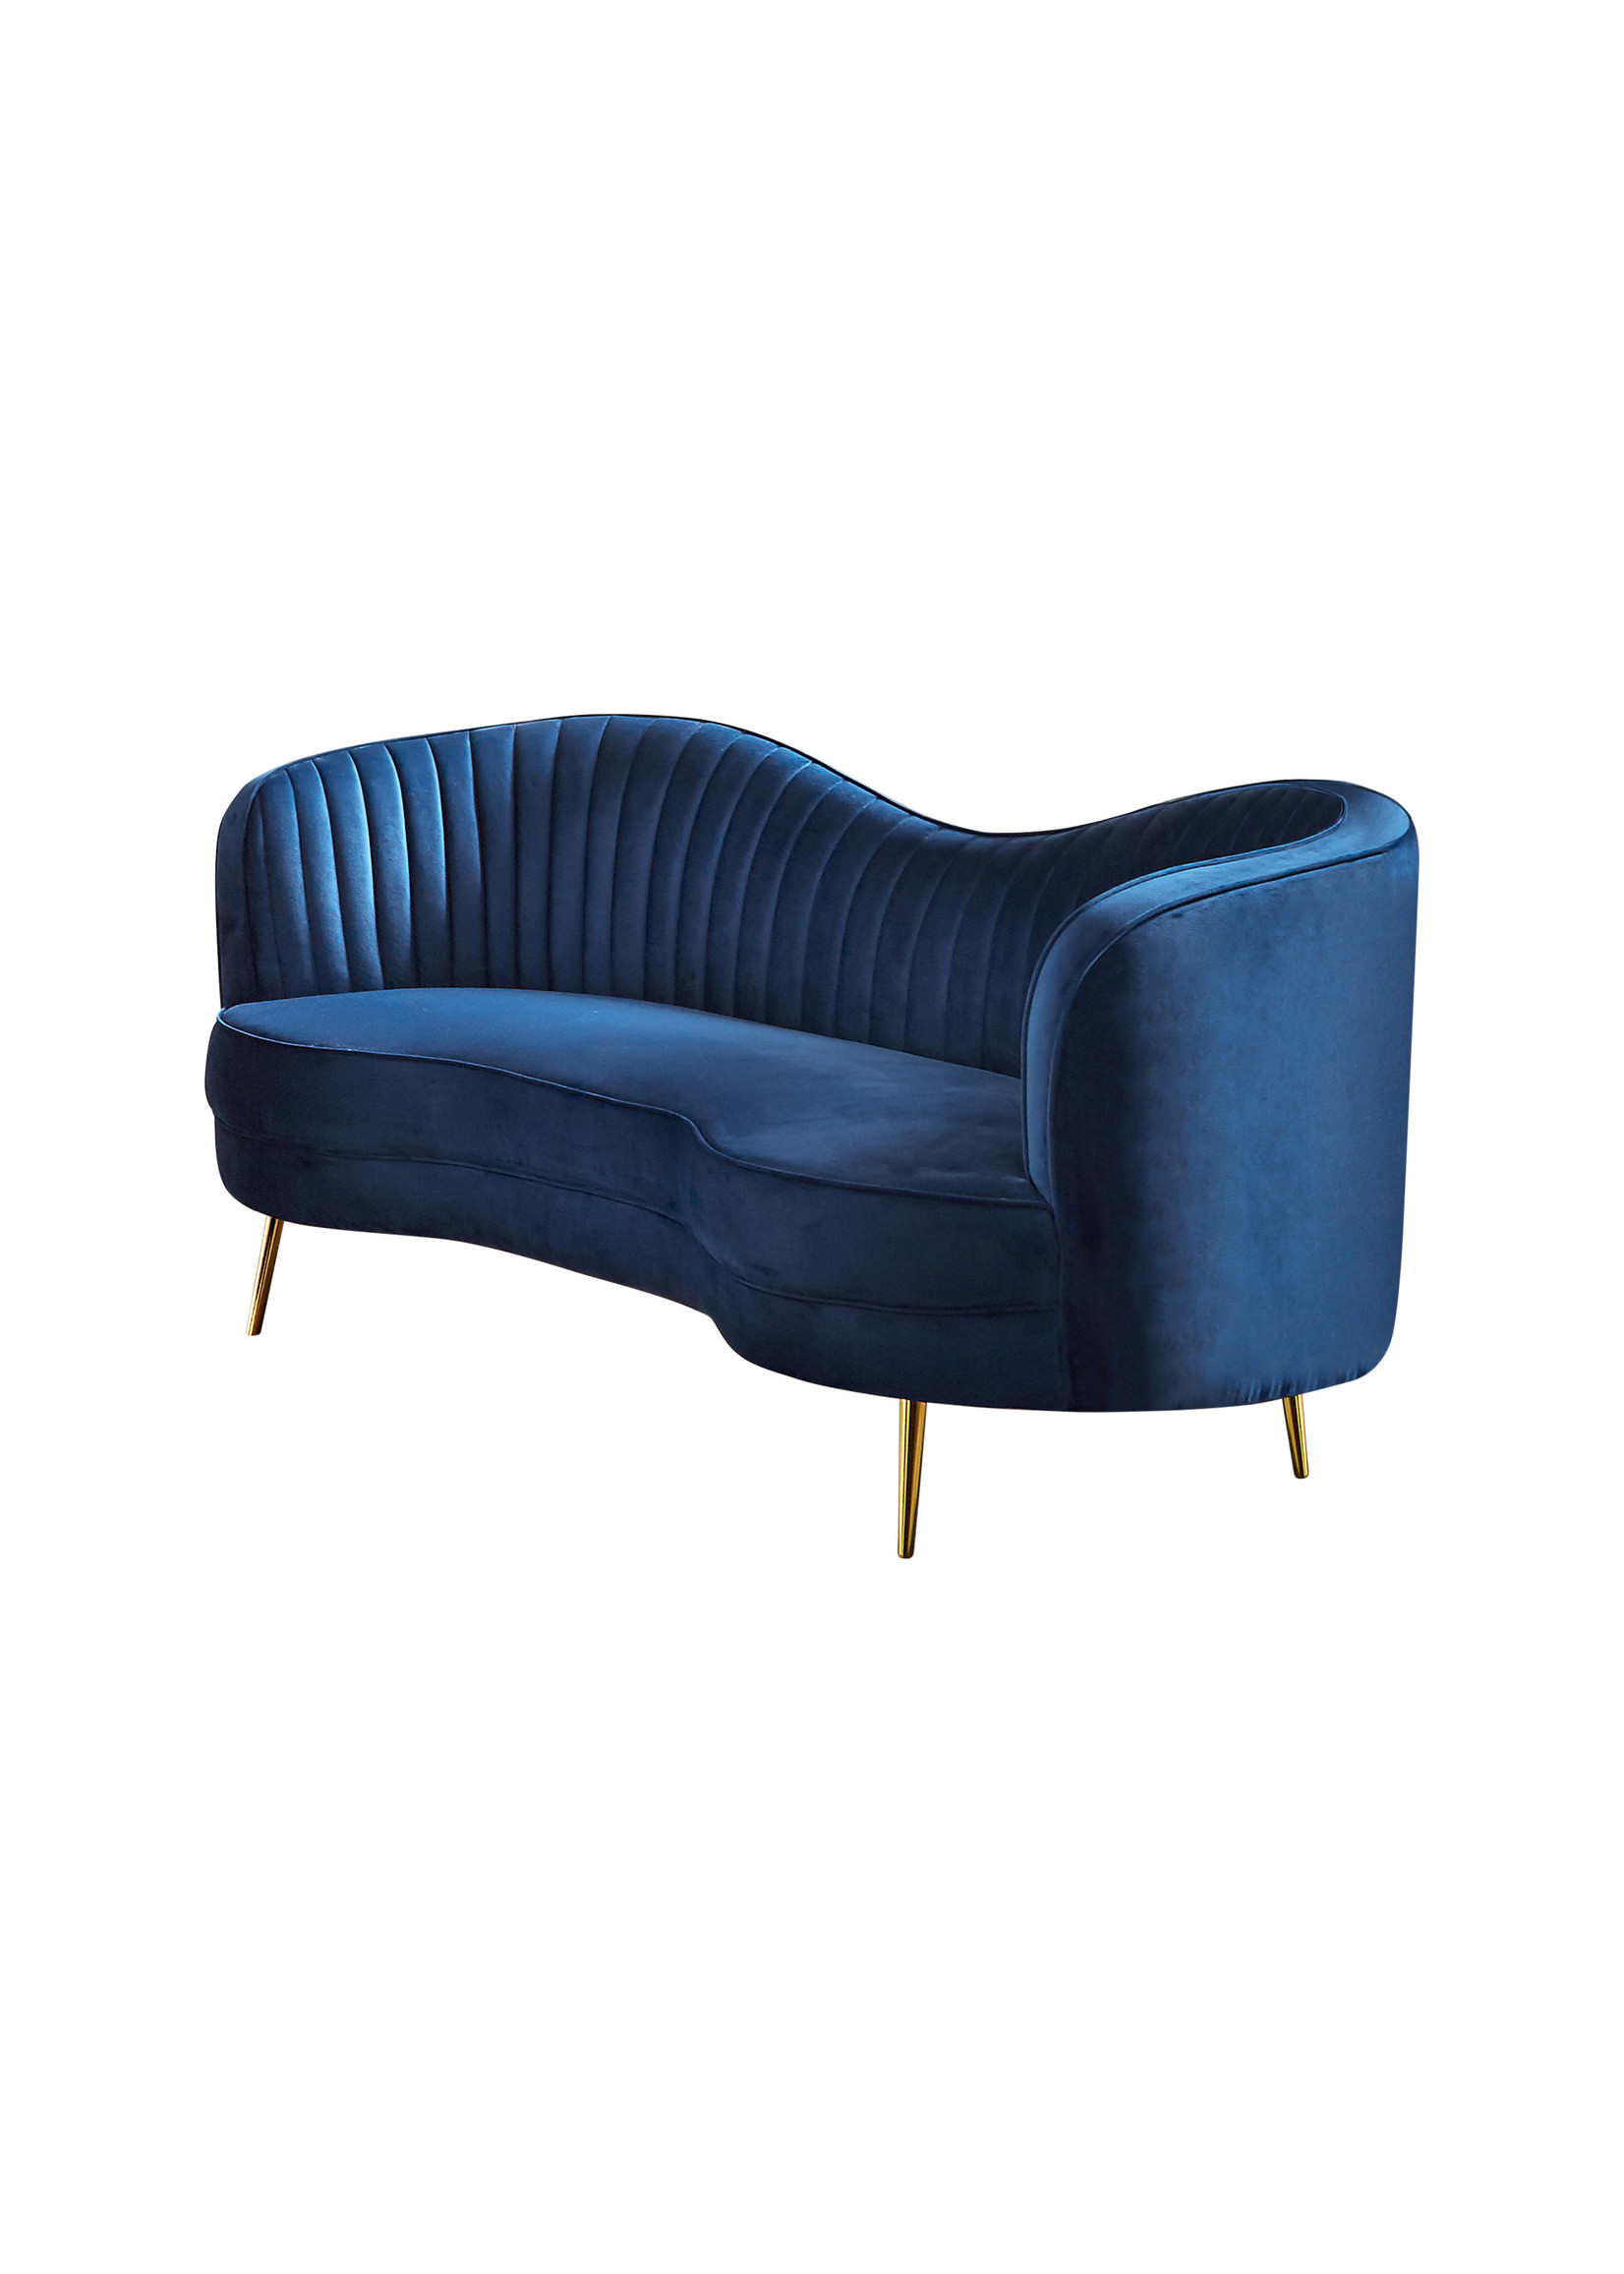 Coaster Furniture Sophia Sofa in Blue Velvet by Coaster